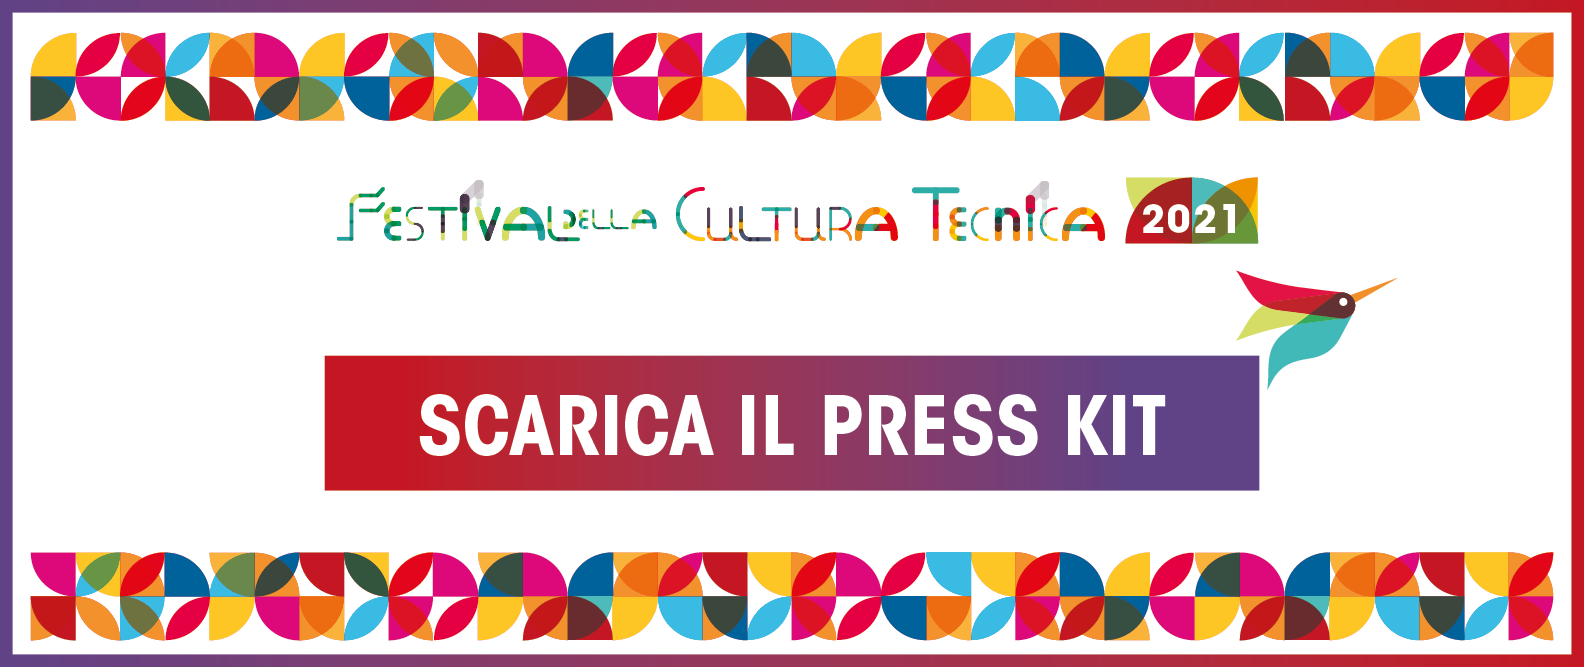 Scarica il Press Kit del Festival della Cultura tecnica 2021